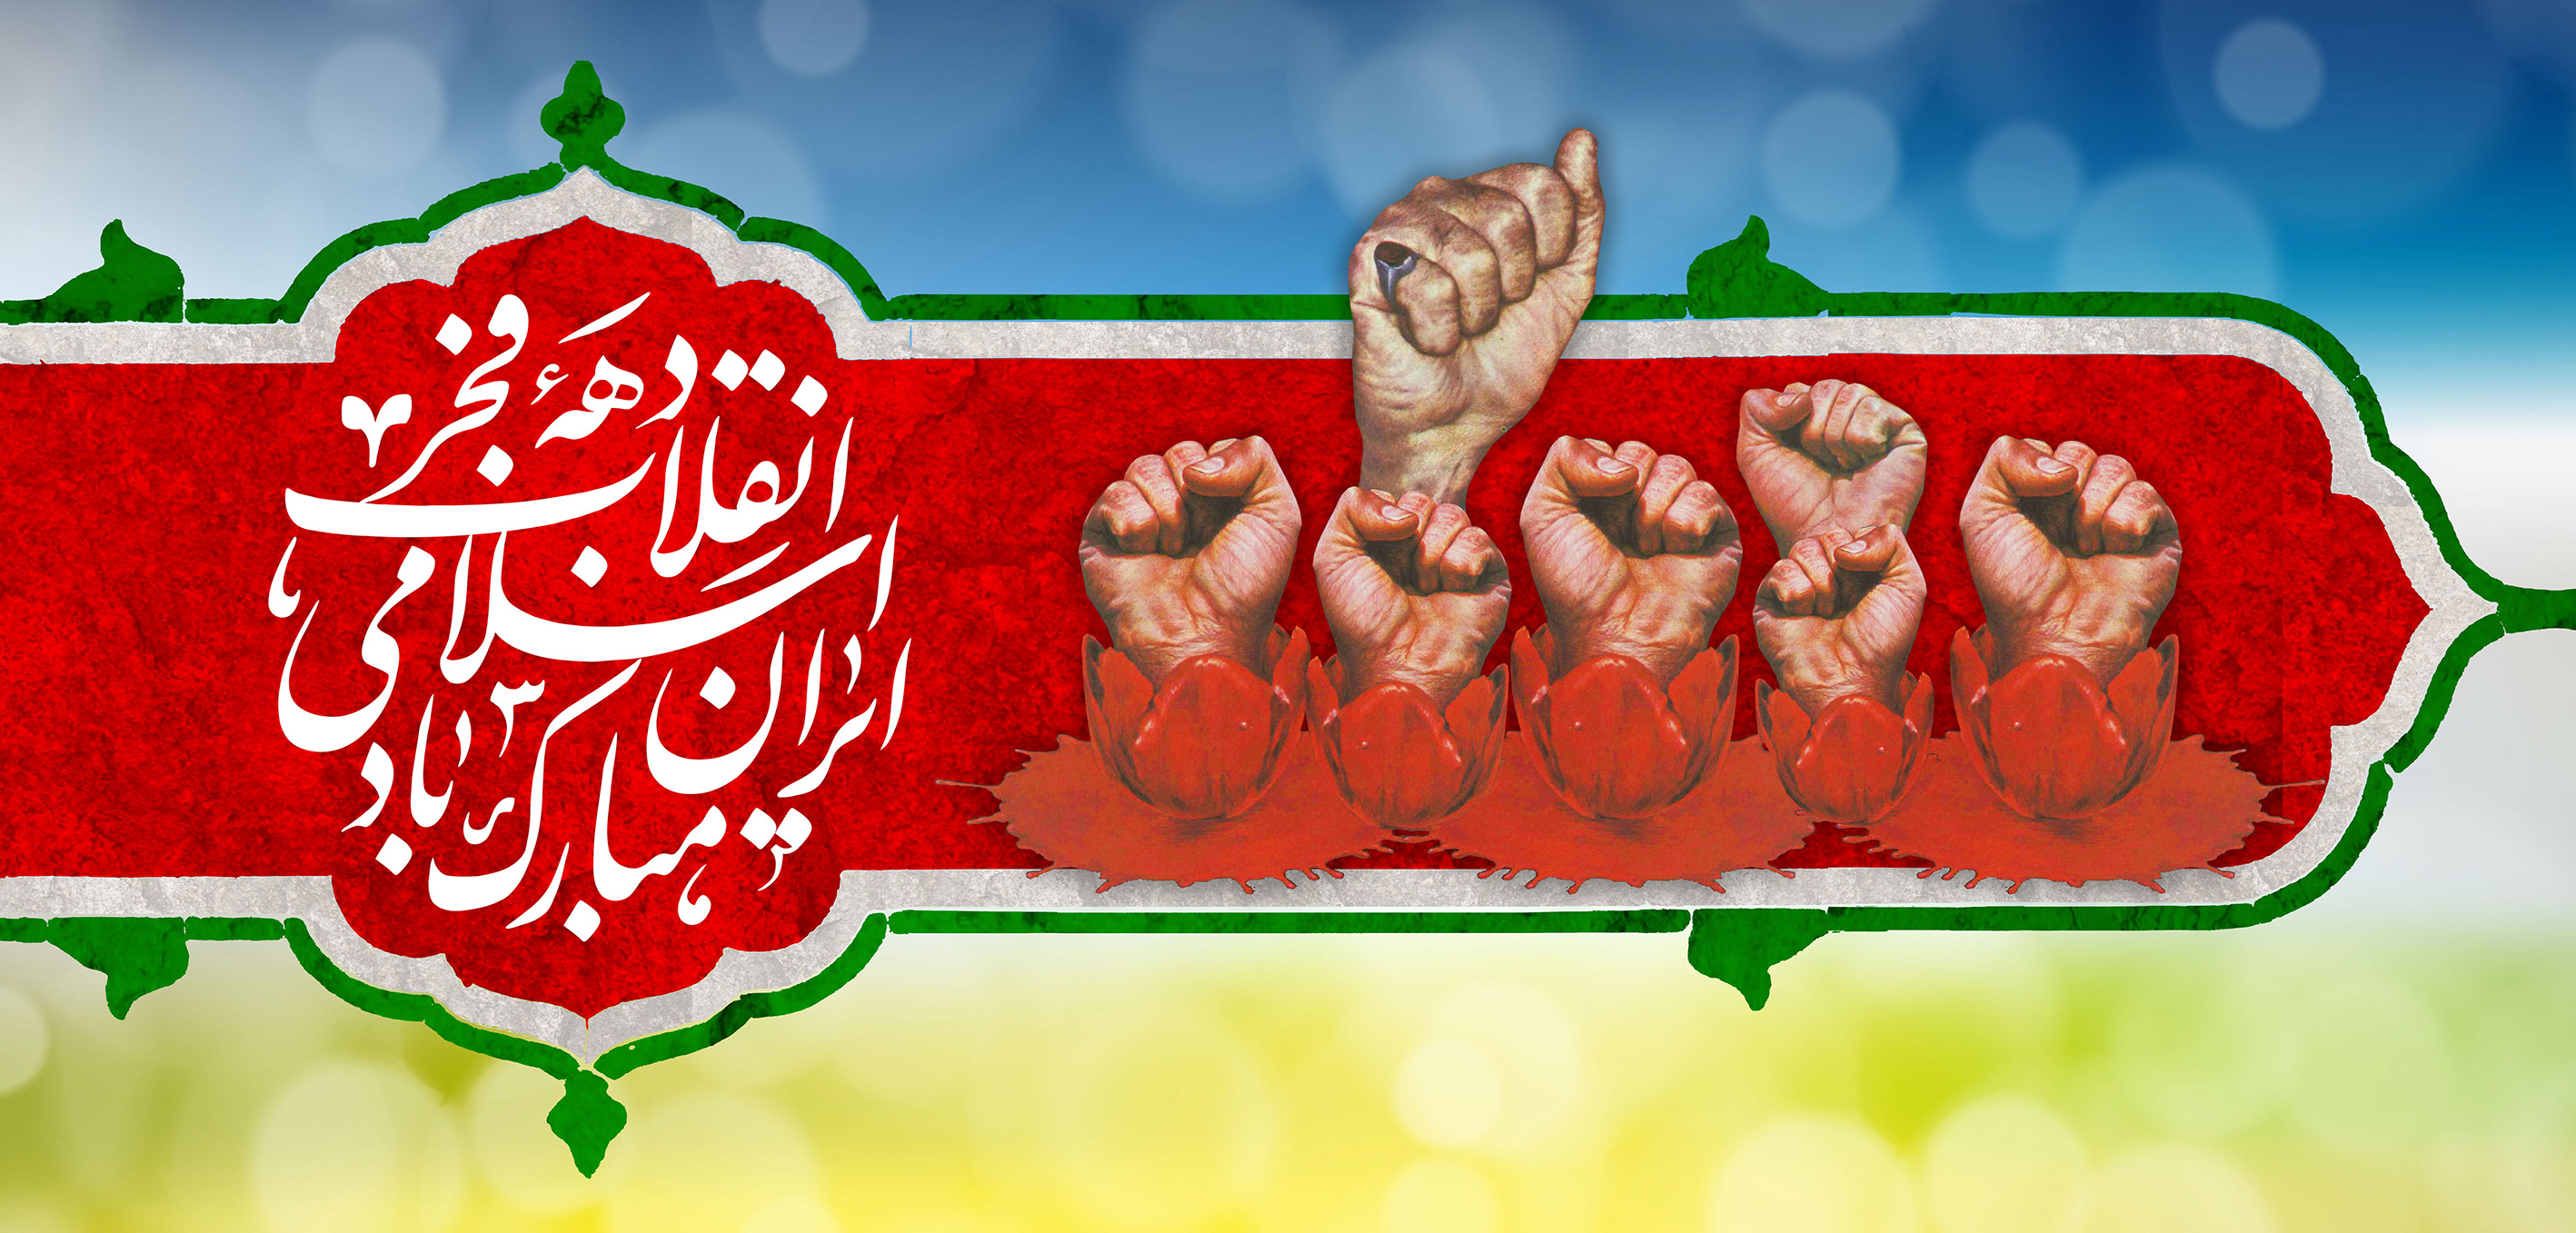 دهه فجر انقلاب اسلامی ایران مبارک باد.